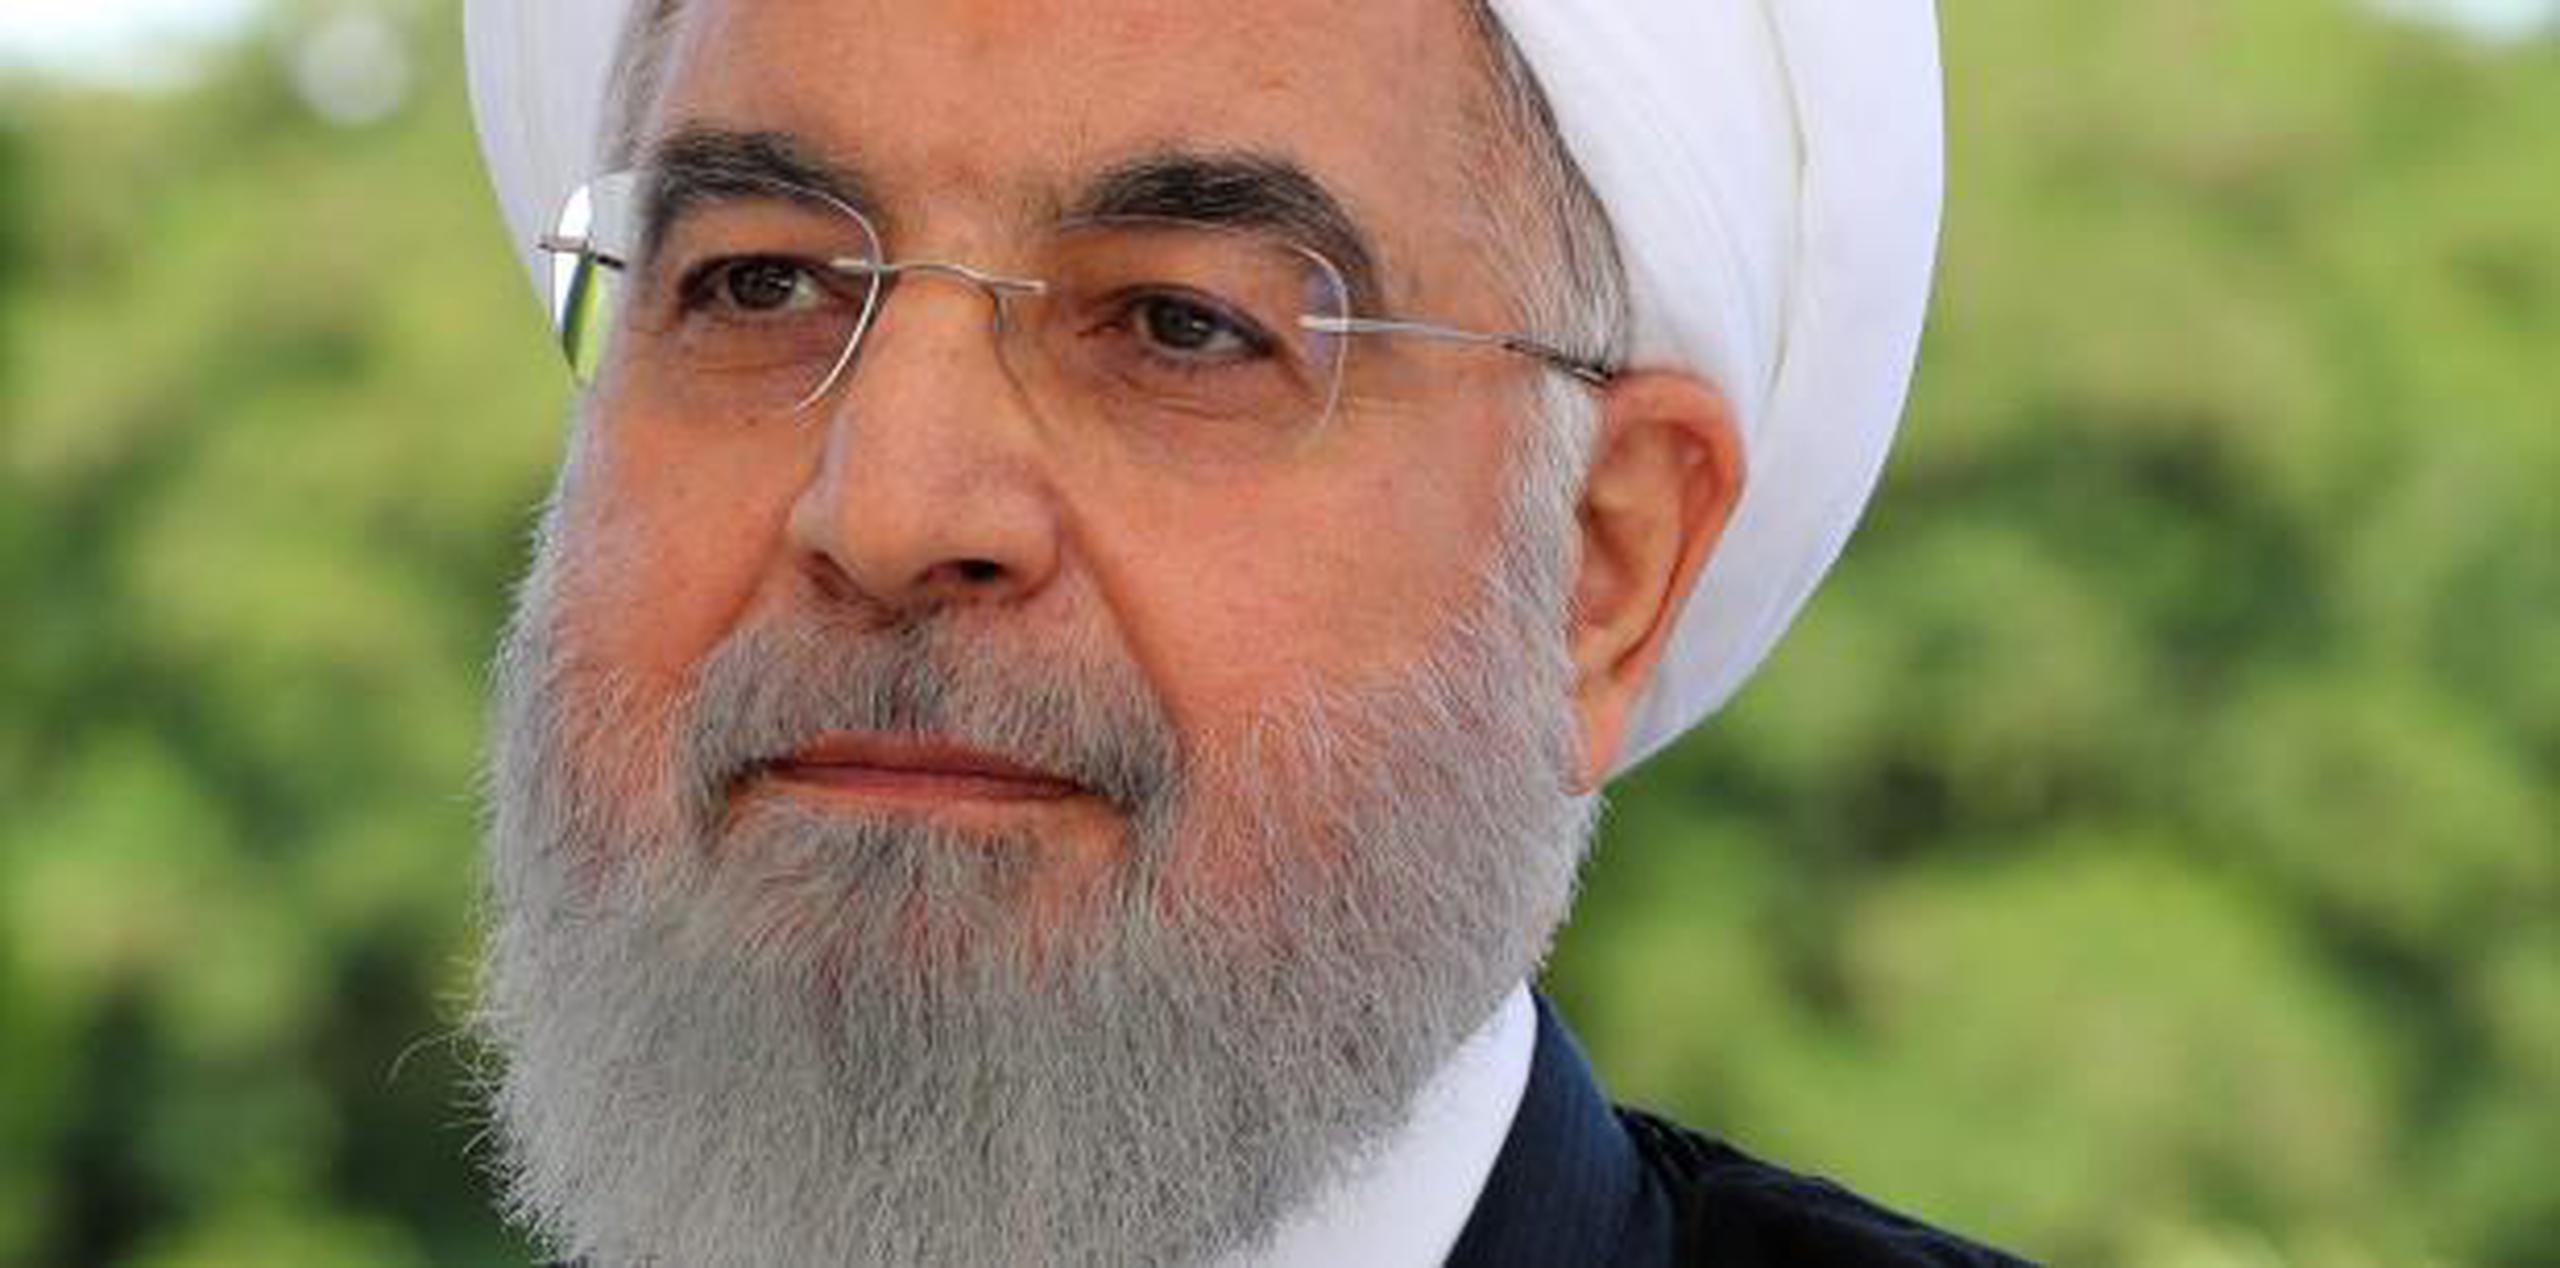 Su portavoz, Abas Musaví, rechazó las acusaciones contra Irán del secretario de Estado estadounidense, Mike Pompeo, y advirtió de que "la naturaleza sospechosa de los recientes ataques es preocupante y alarmante". (EFE)